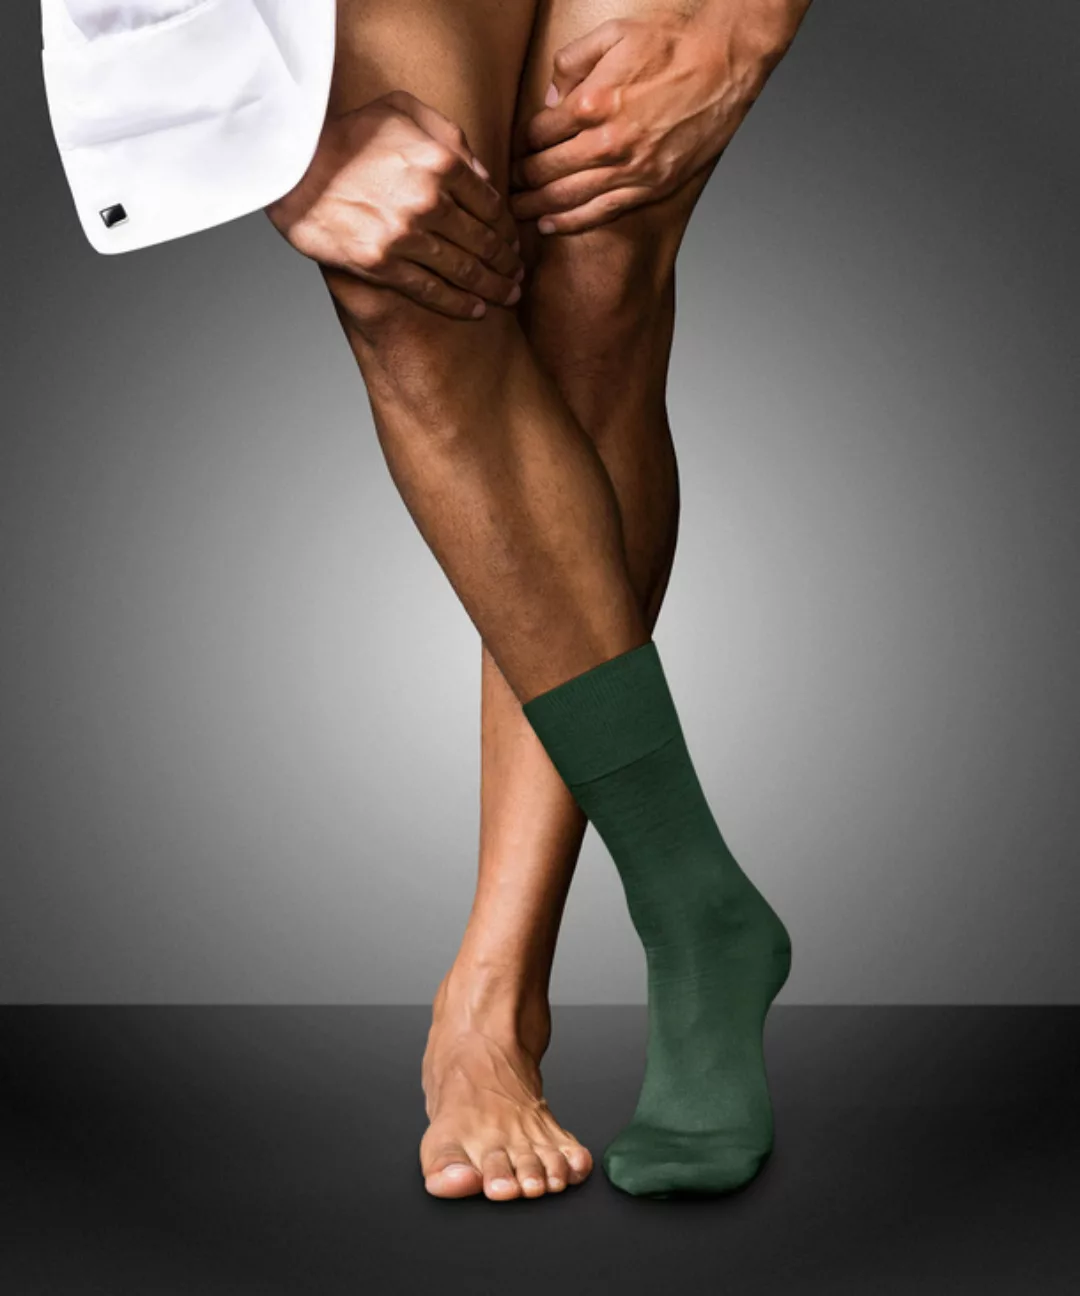 FALKE No. 6 Finest Merino & Silk Gentlemen Socken, Herren, 45-46, Grün, Uni günstig online kaufen